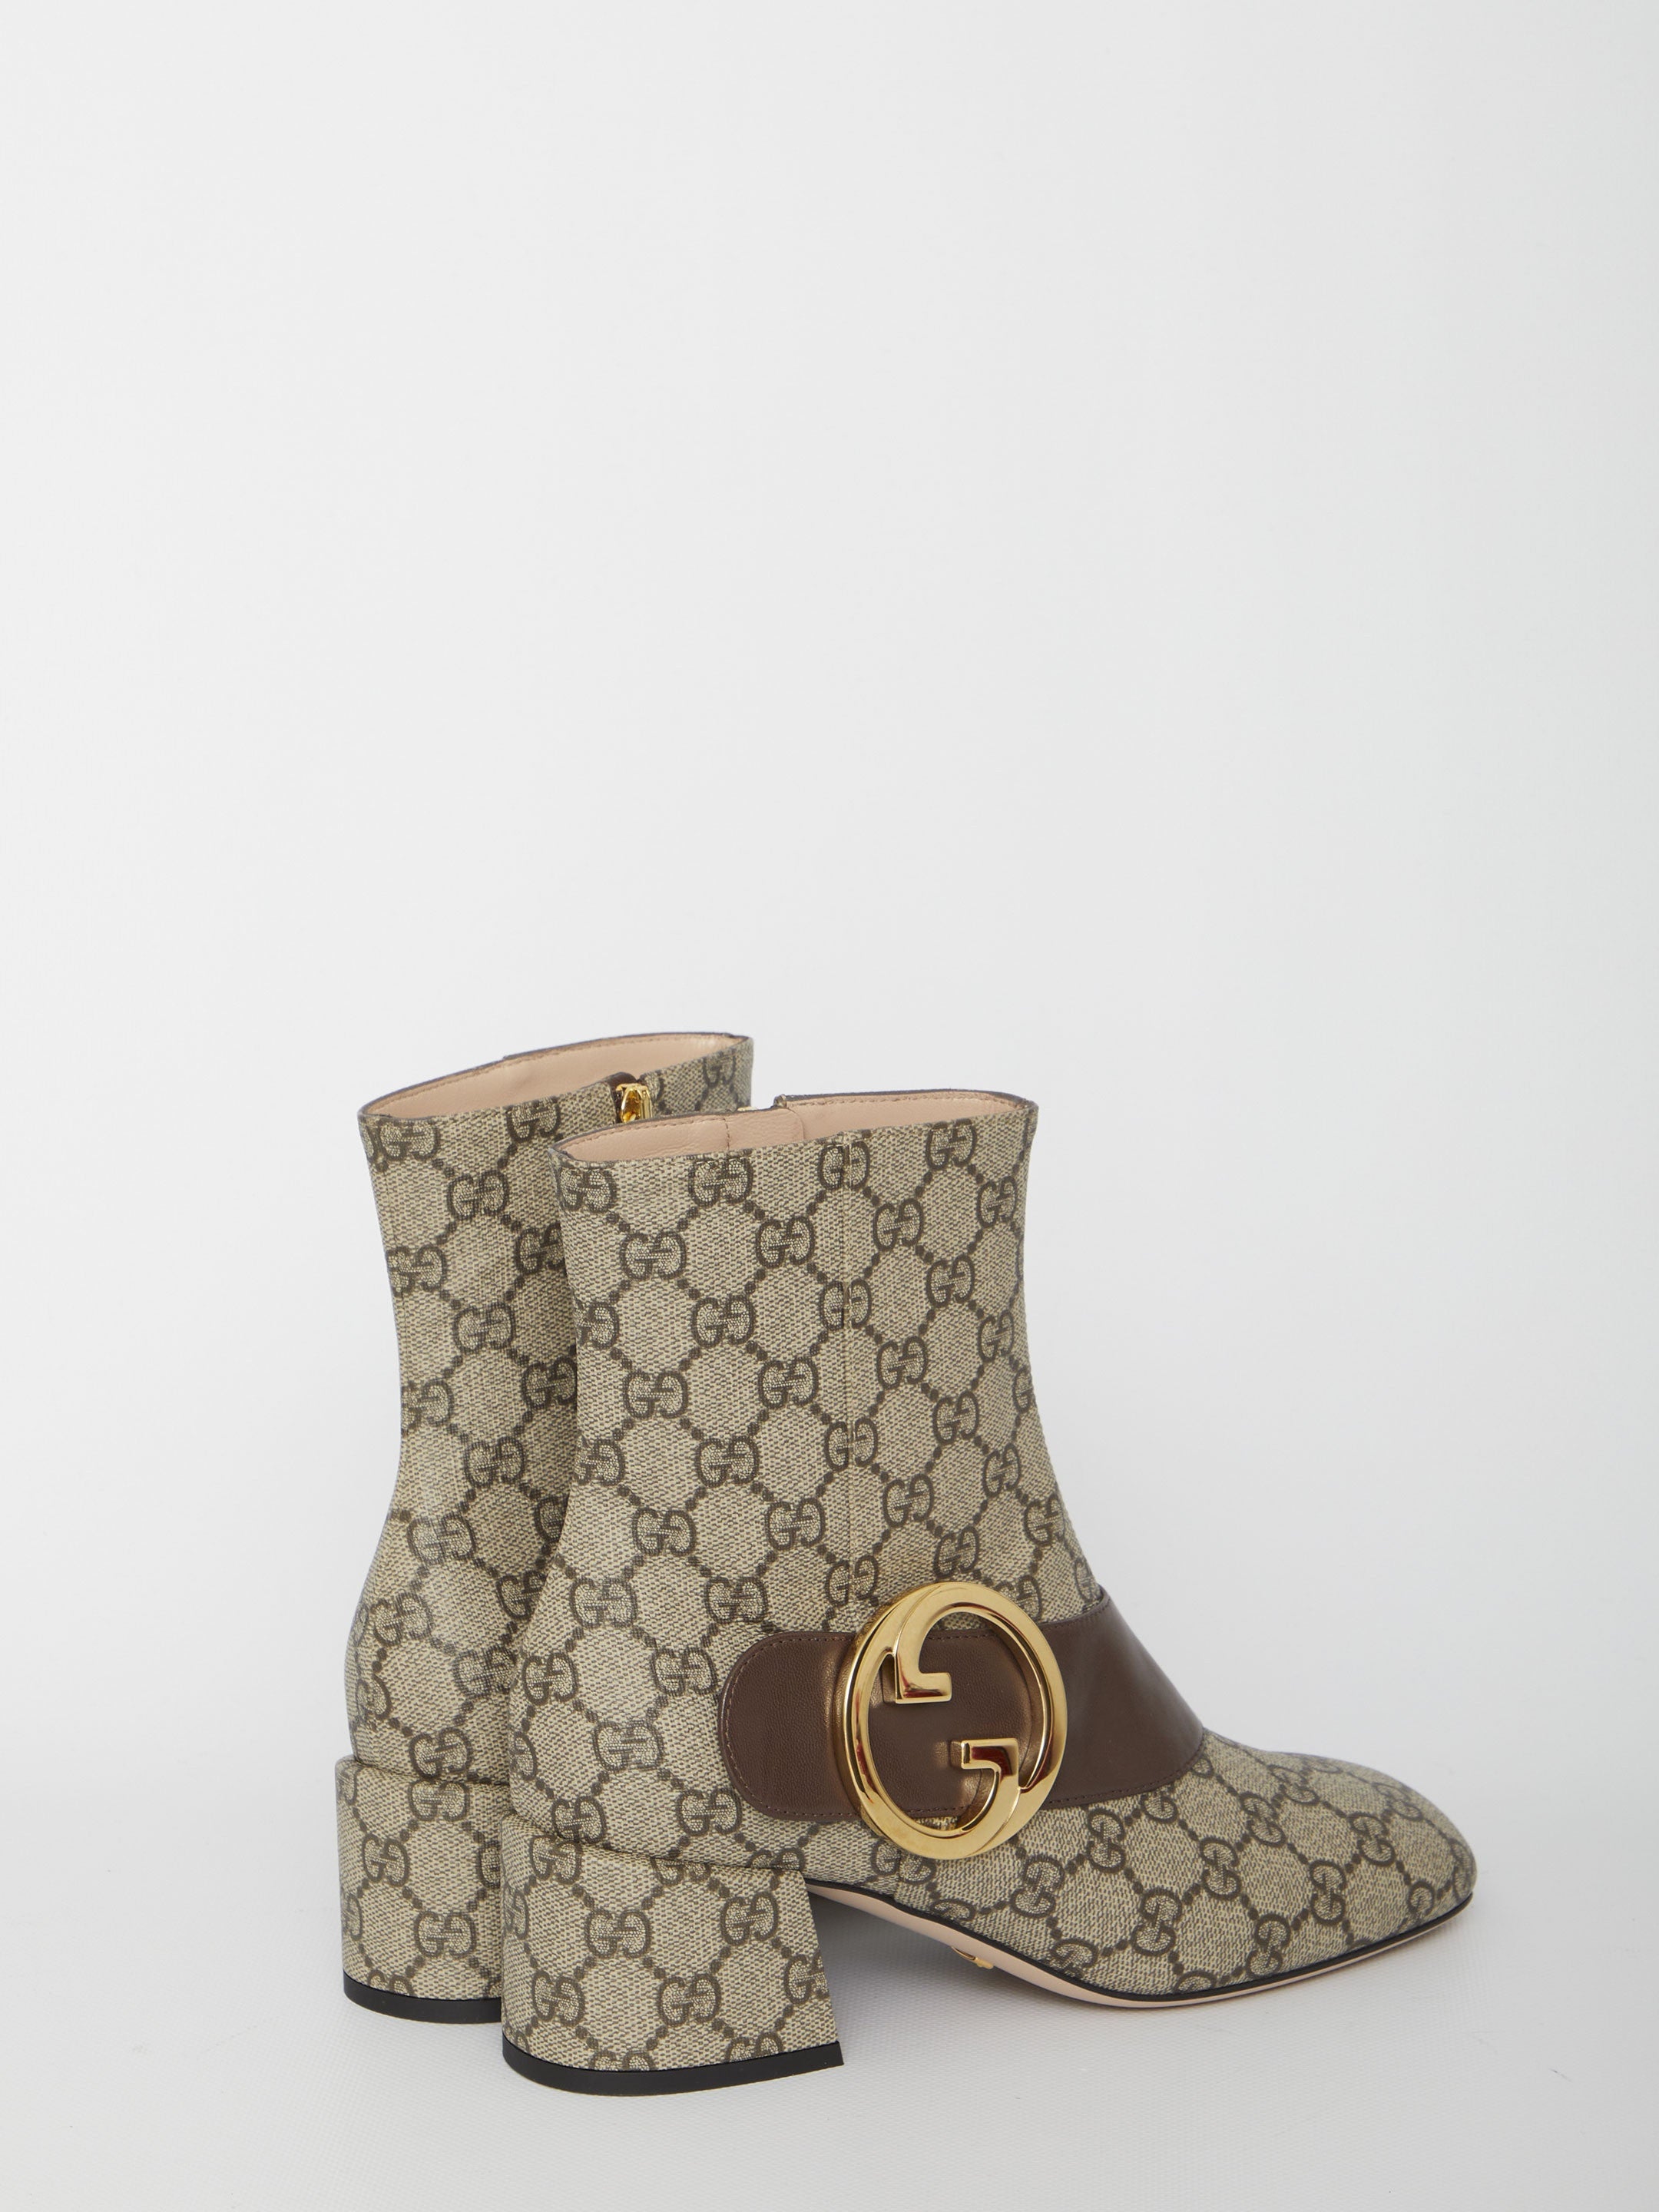 Gucci Blondie boots